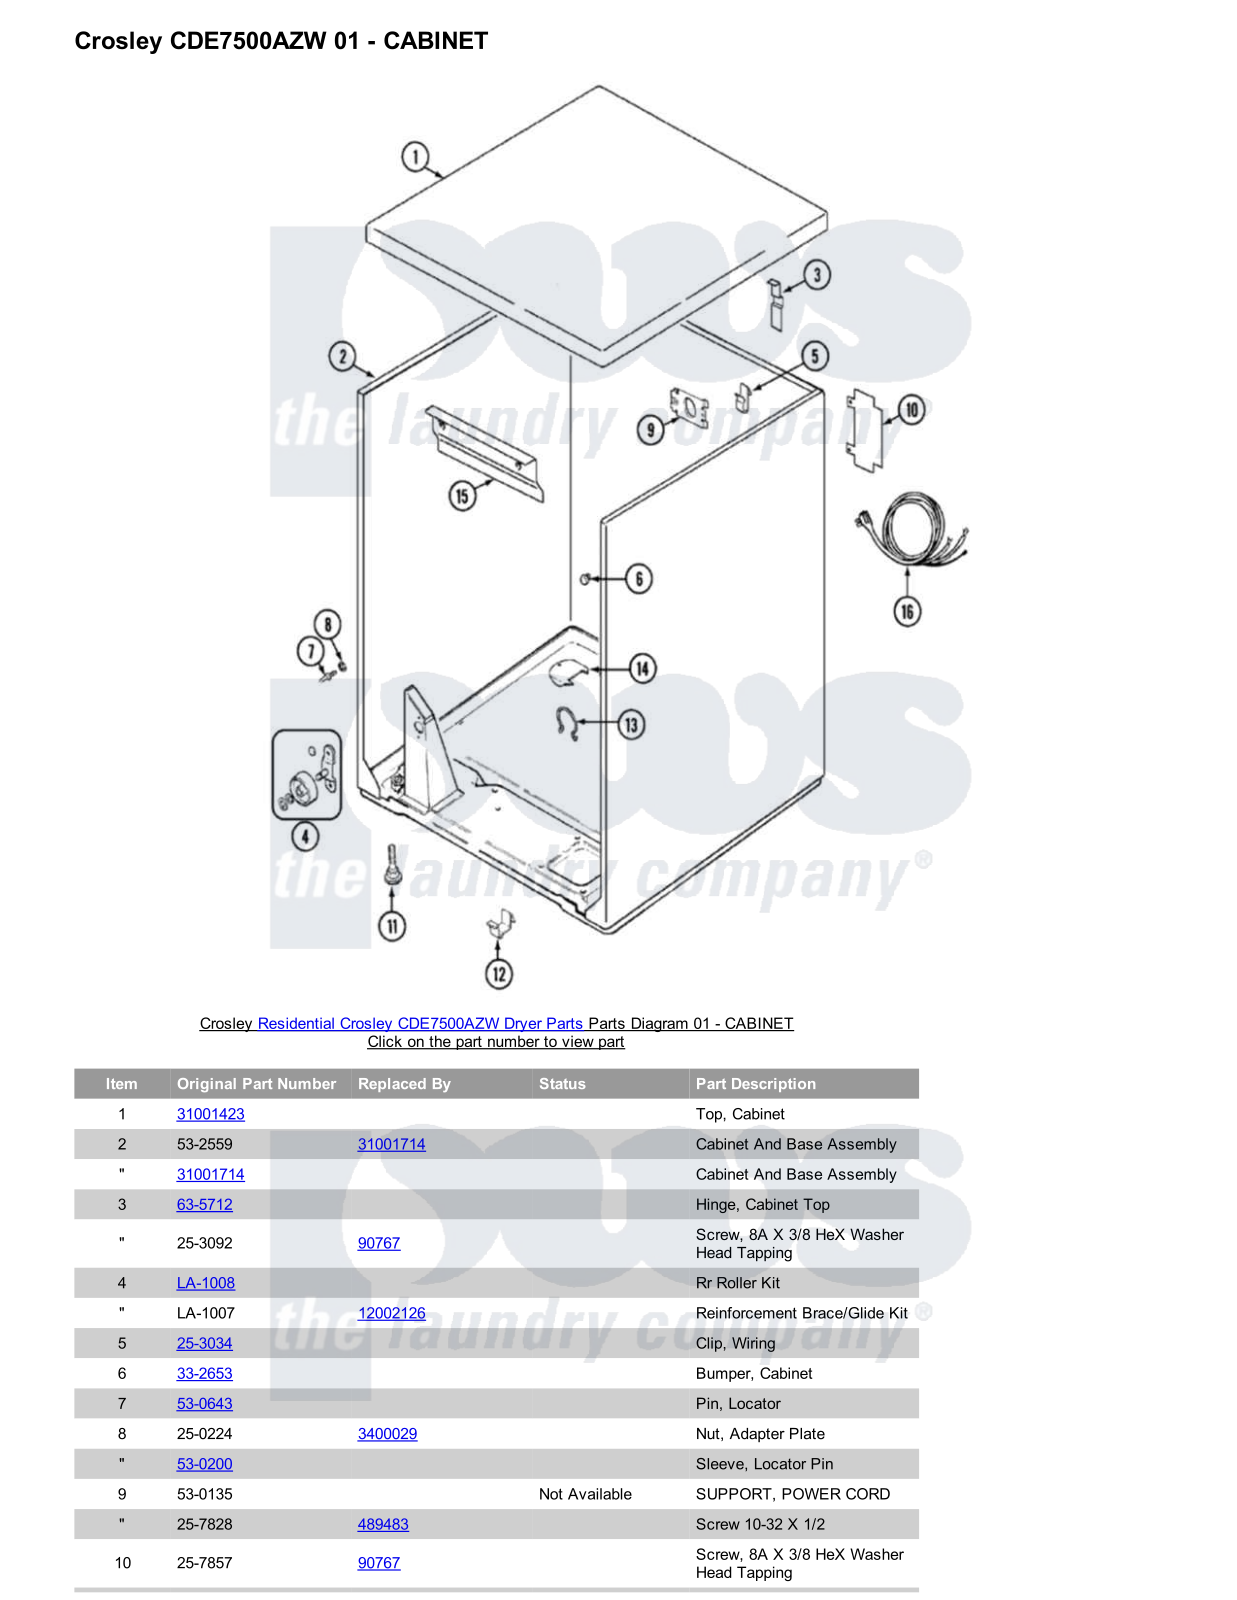 Crosley CDE7500AZW Parts Diagram